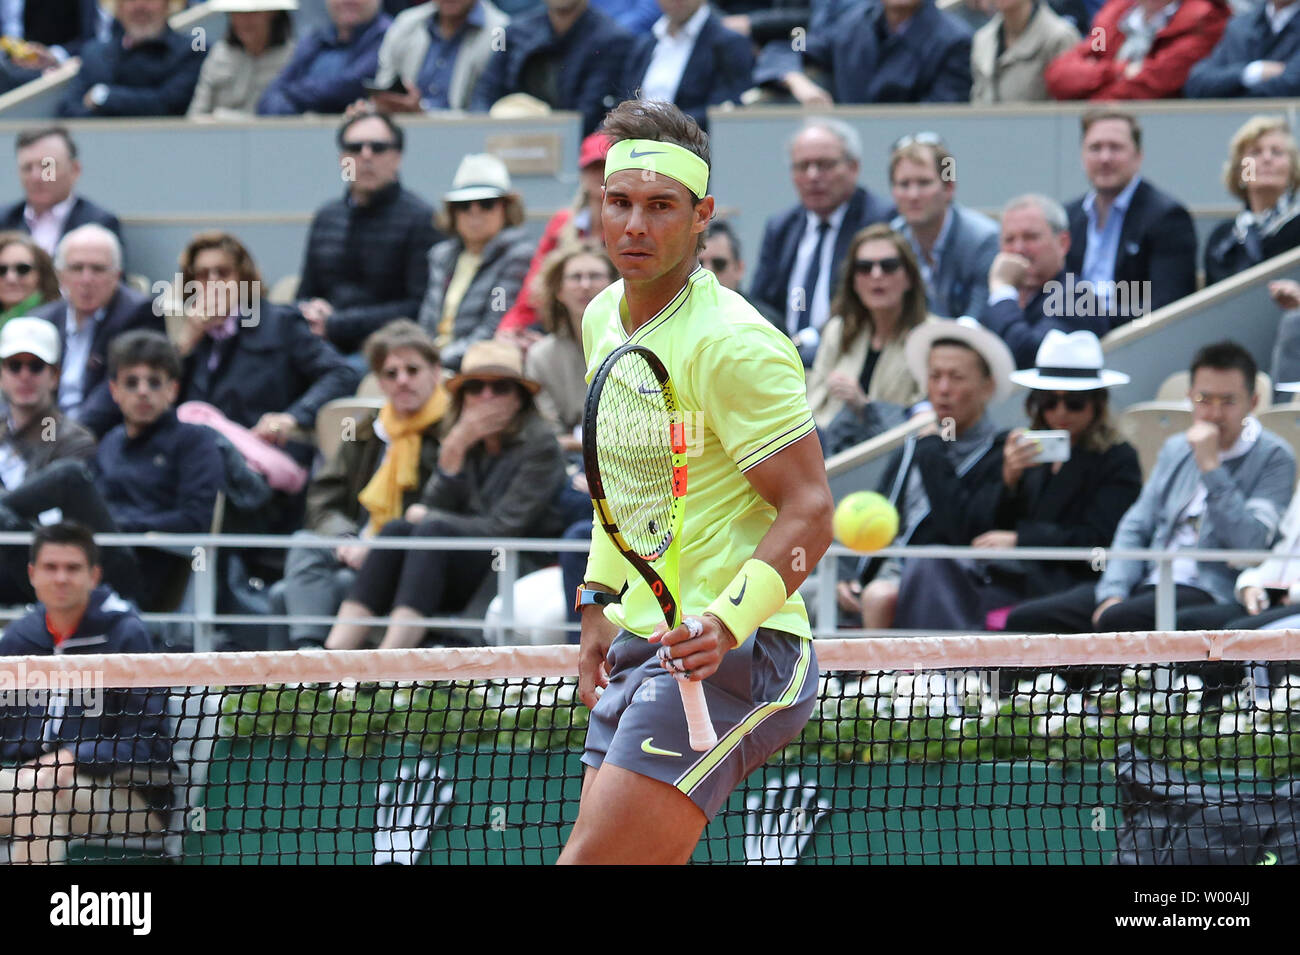 Montres de l'Espagne de Rafael Nadal le ballon passer devant lui lors de son Open de France demi-finales match contre Roger Federer de Suisse à Roland Garros à Paris le 7 juin 2019. Nadal bat Federer 6-3, 6-4, 6-2) pour passer à la finale. Photo de David Silpa/UPI Banque D'Images